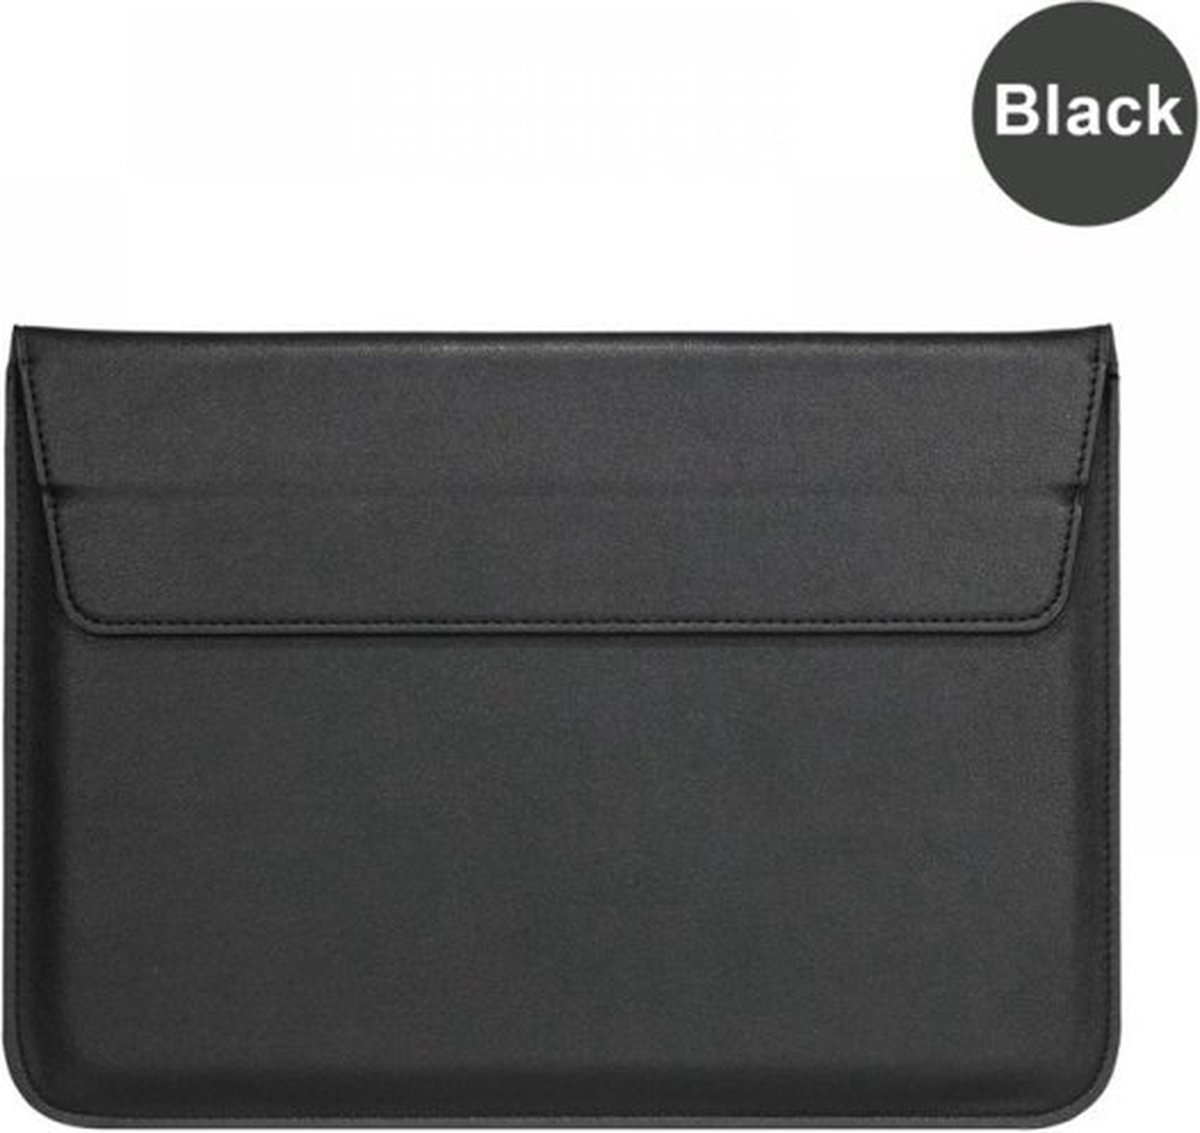 Igoods Universeel Sleeve 13.3 inch Zwart Insteek hoesje Hard - Slim - gebruikt voor Laptop Sleeve with Folding Stand for 13